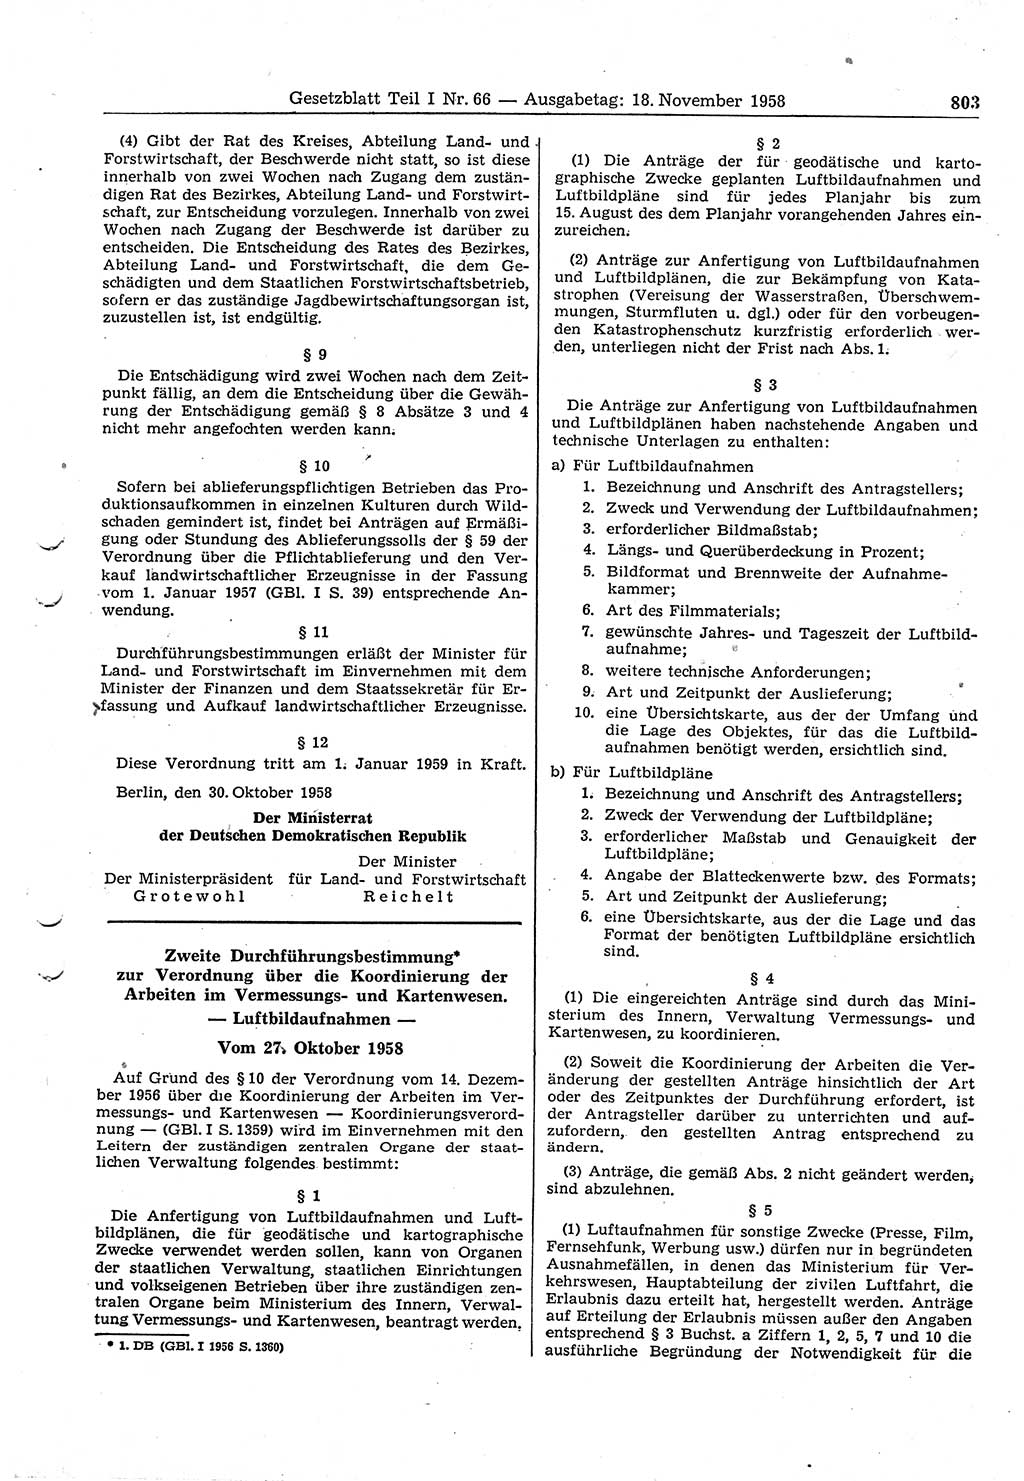 Gesetzblatt (GBl.) der Deutschen Demokratischen Republik (DDR) Teil Ⅰ 1958, Seite 803 (GBl. DDR Ⅰ 1958, S. 803)